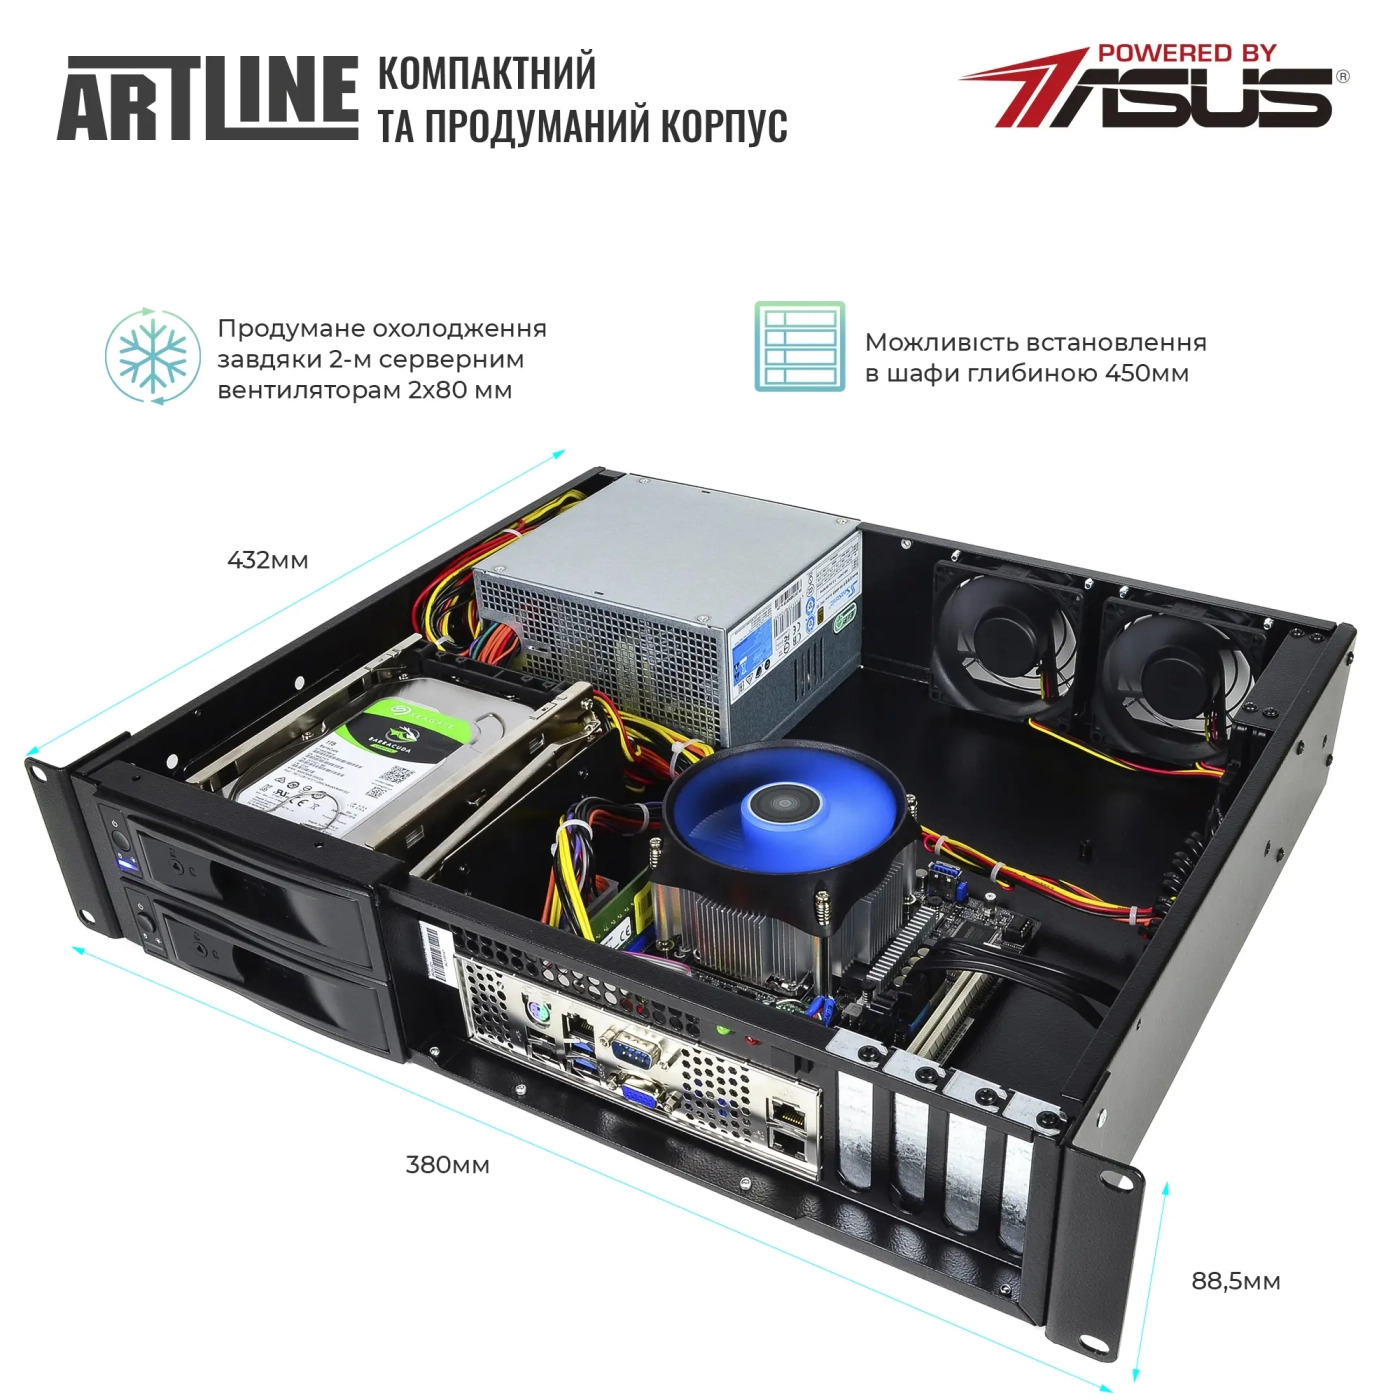 Купить Сервер ARTLINE Business R37 (R37v80) - фото 3